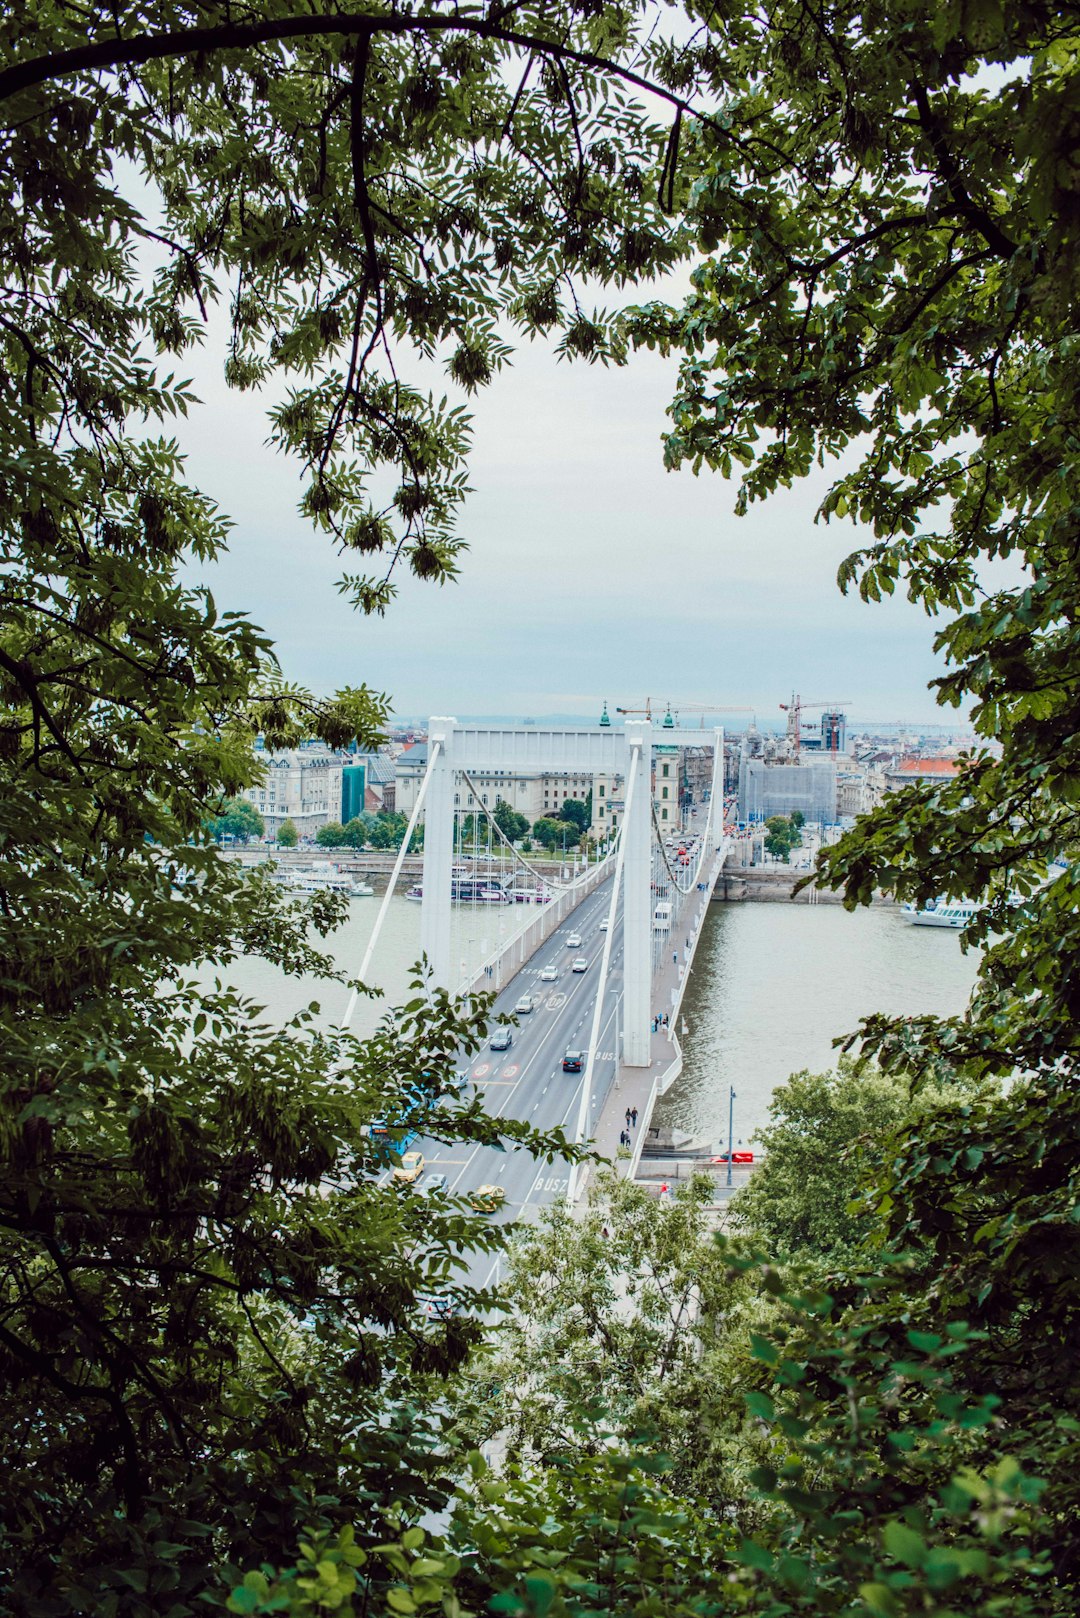 Suspension bridge photo spot Gellérthegy Budapest